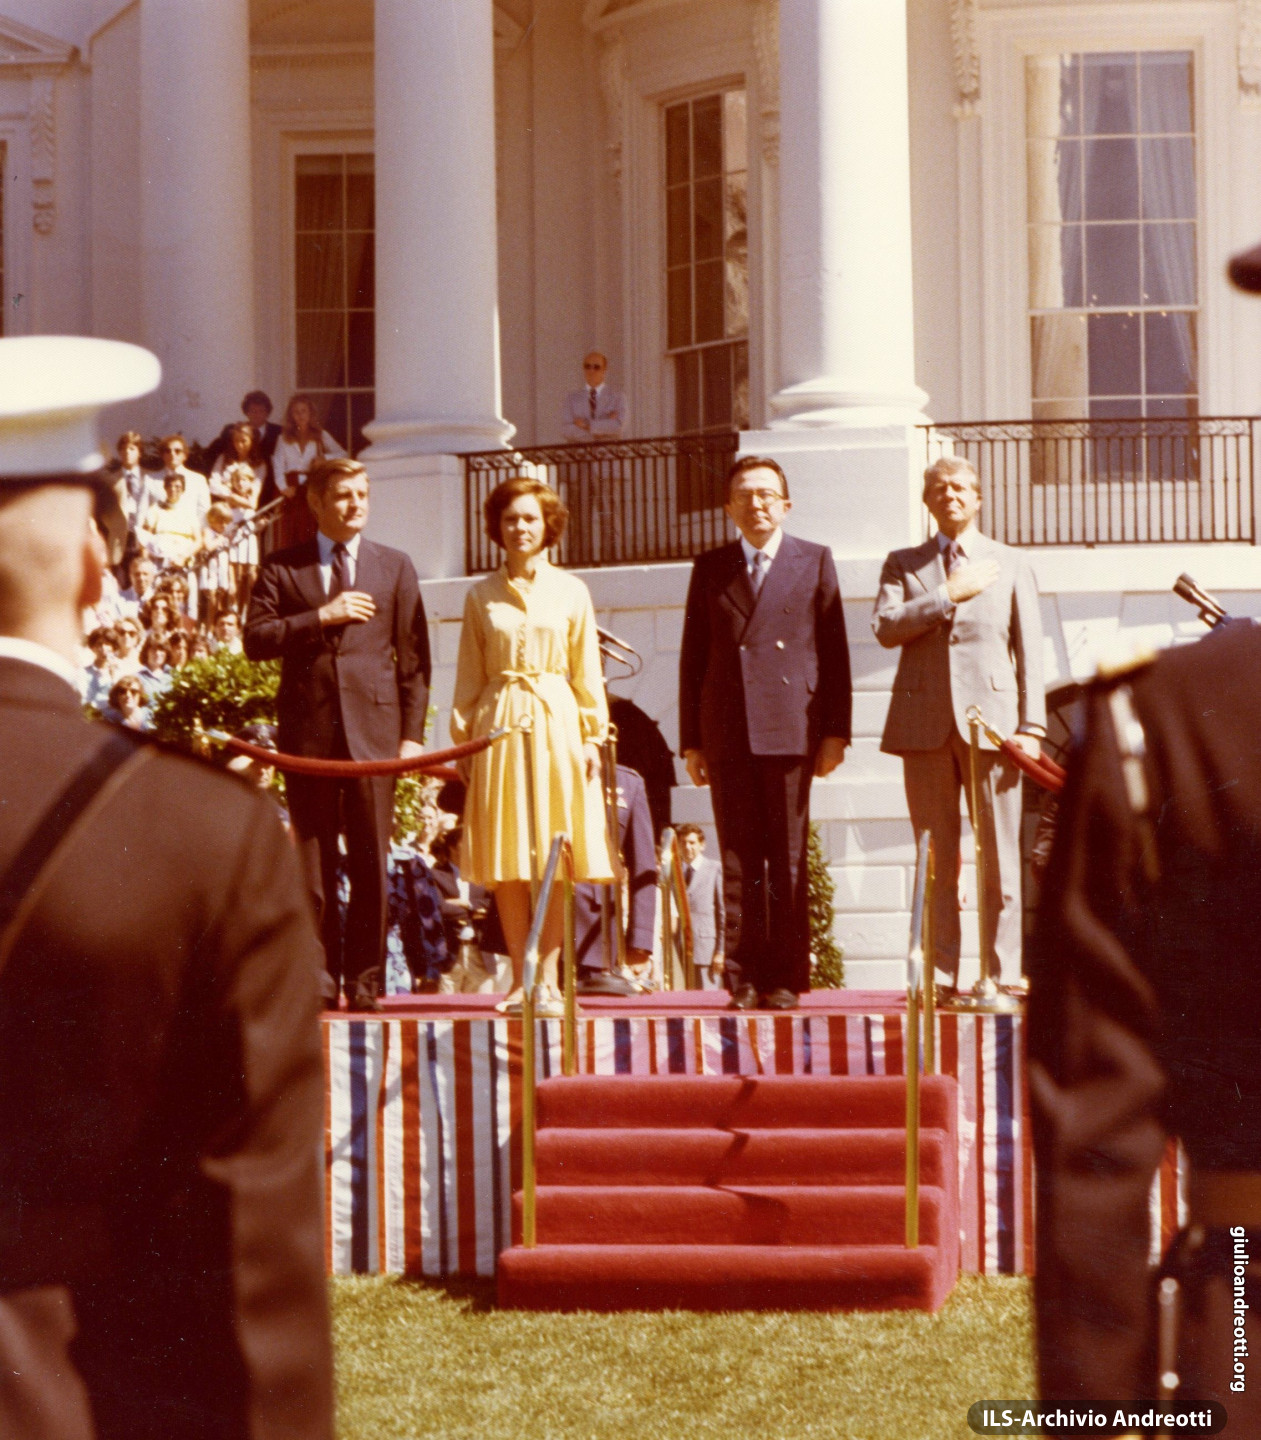 Visita ufficiale alla Casa Bianca il 26 giugno 1977. Cerimonia di accoglienza con il Presidente Jimmy Carter, la moglie Rosalinn e il vicepresidente Walter Mondale.